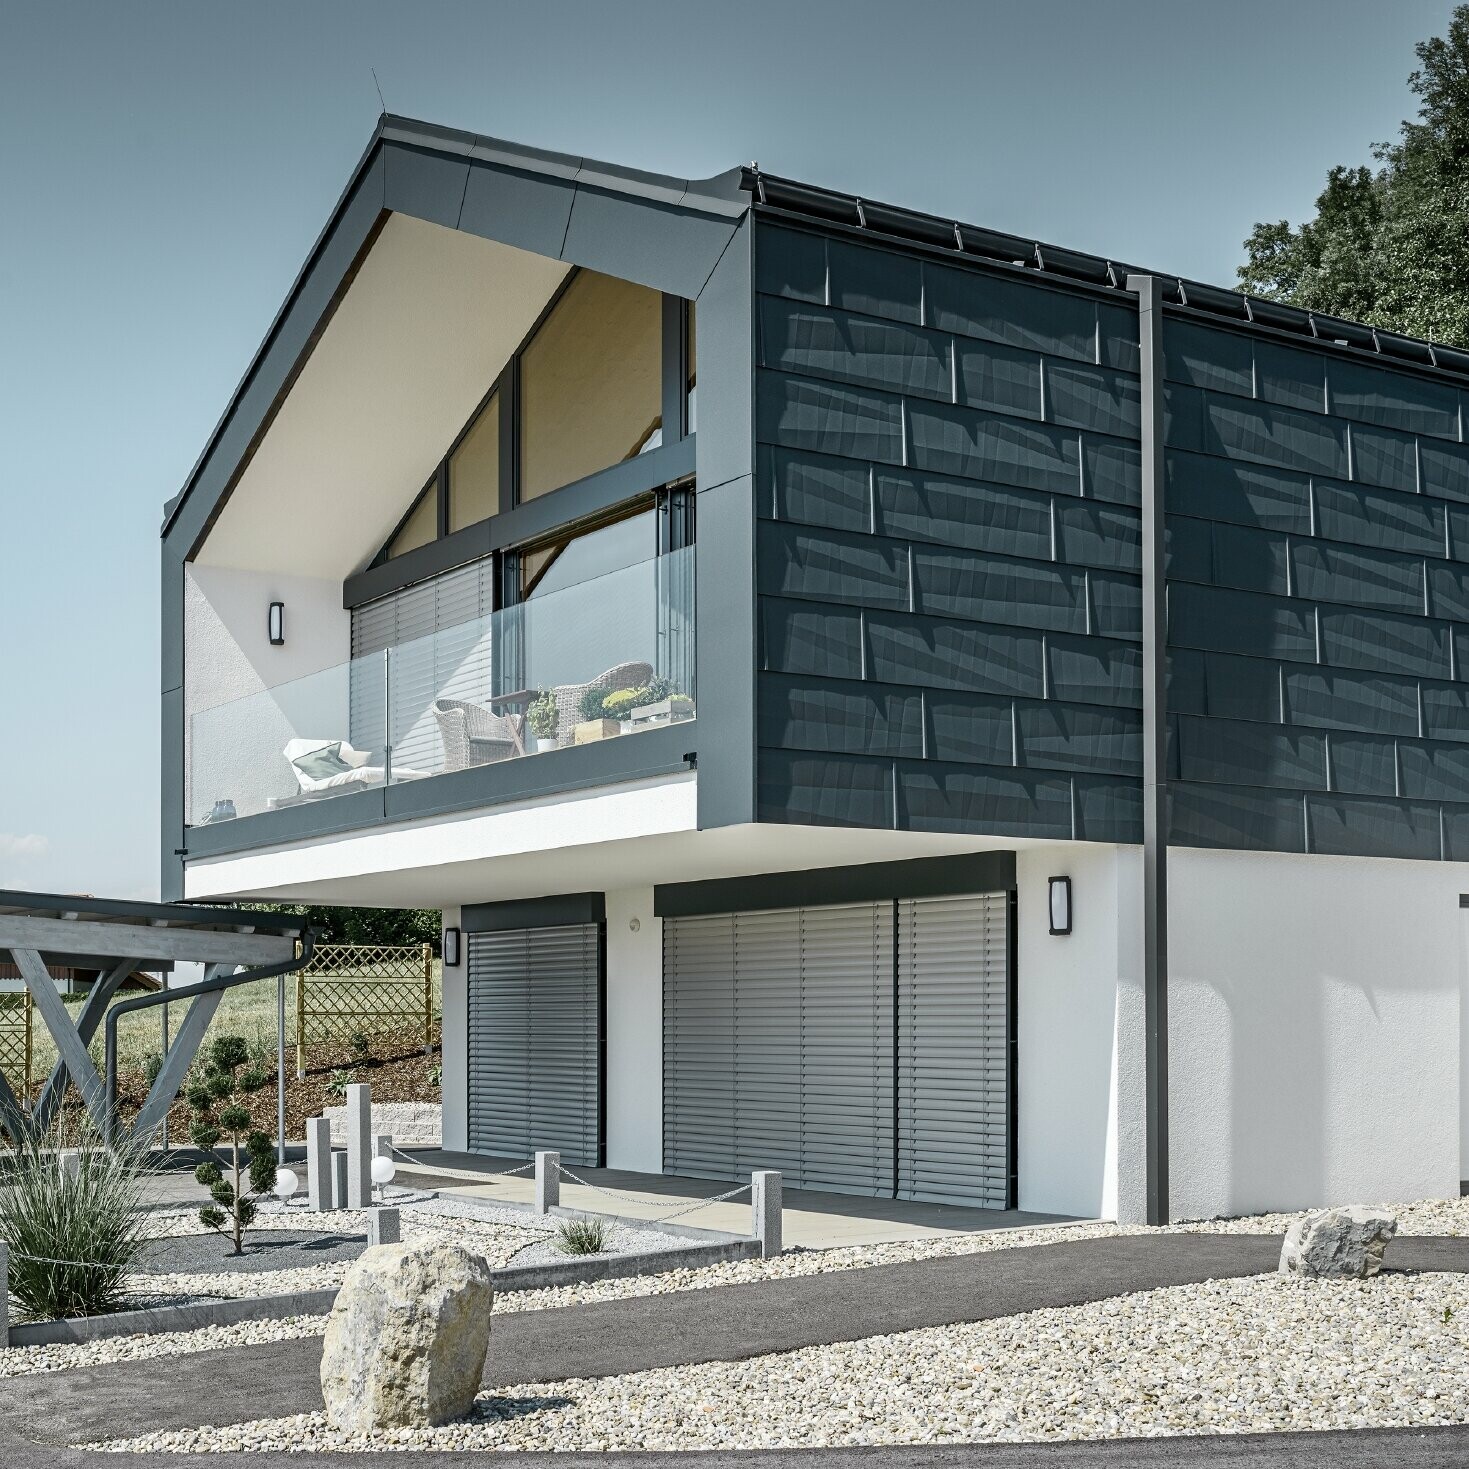 Sodobna večdružinska hiša z velikimi steklenimi površinami, streha in fasada sta bili obloženi s strešnimi in fasadnimi paneli FX.12 PREFA v antracitni barvi.